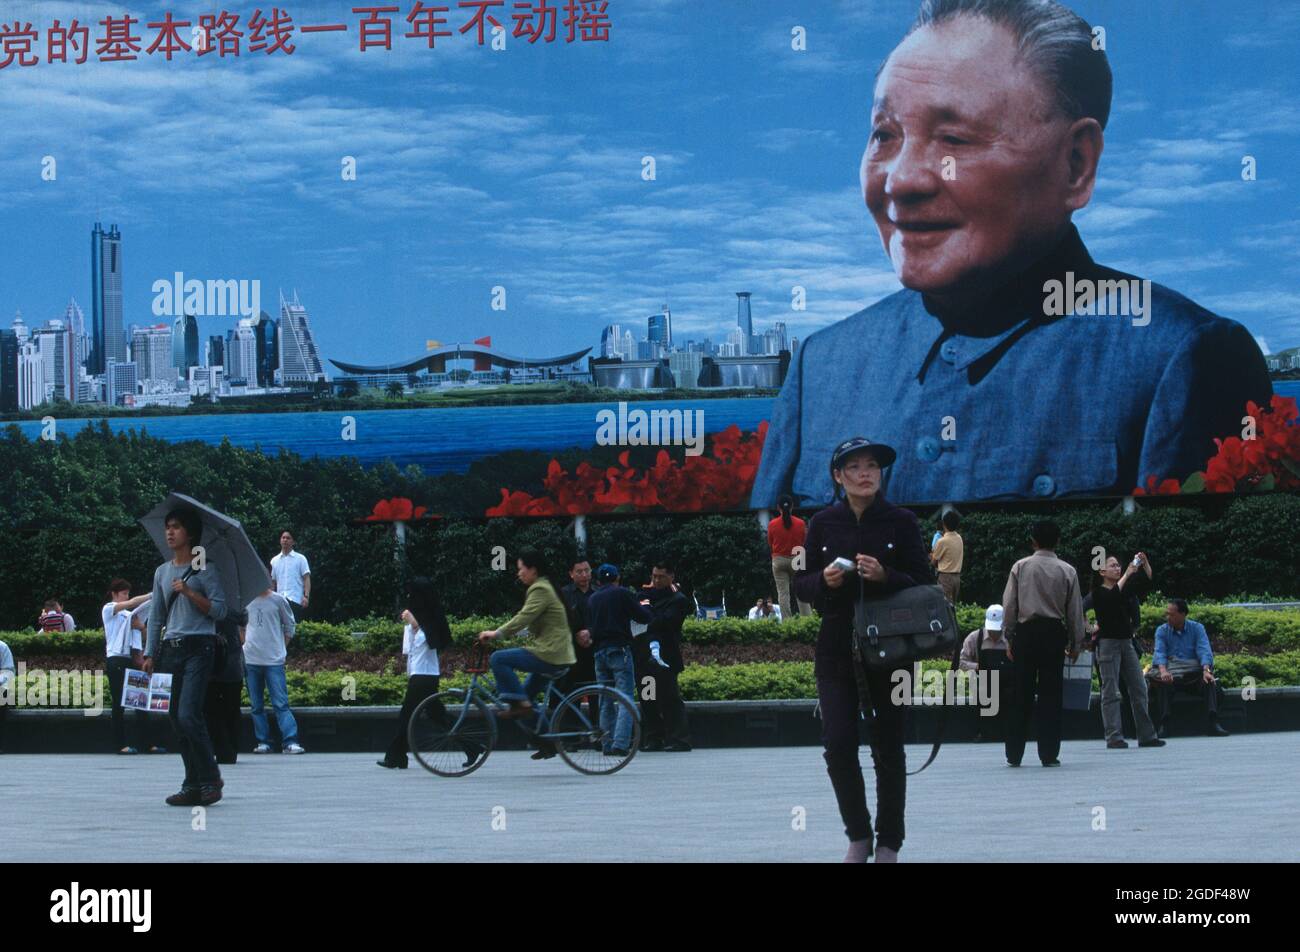 Poster géant de Deng Xiaoping fondateur de la zone économique spéciale de Shenzhen en Chine 12 avril, 2005 Banque D'Images